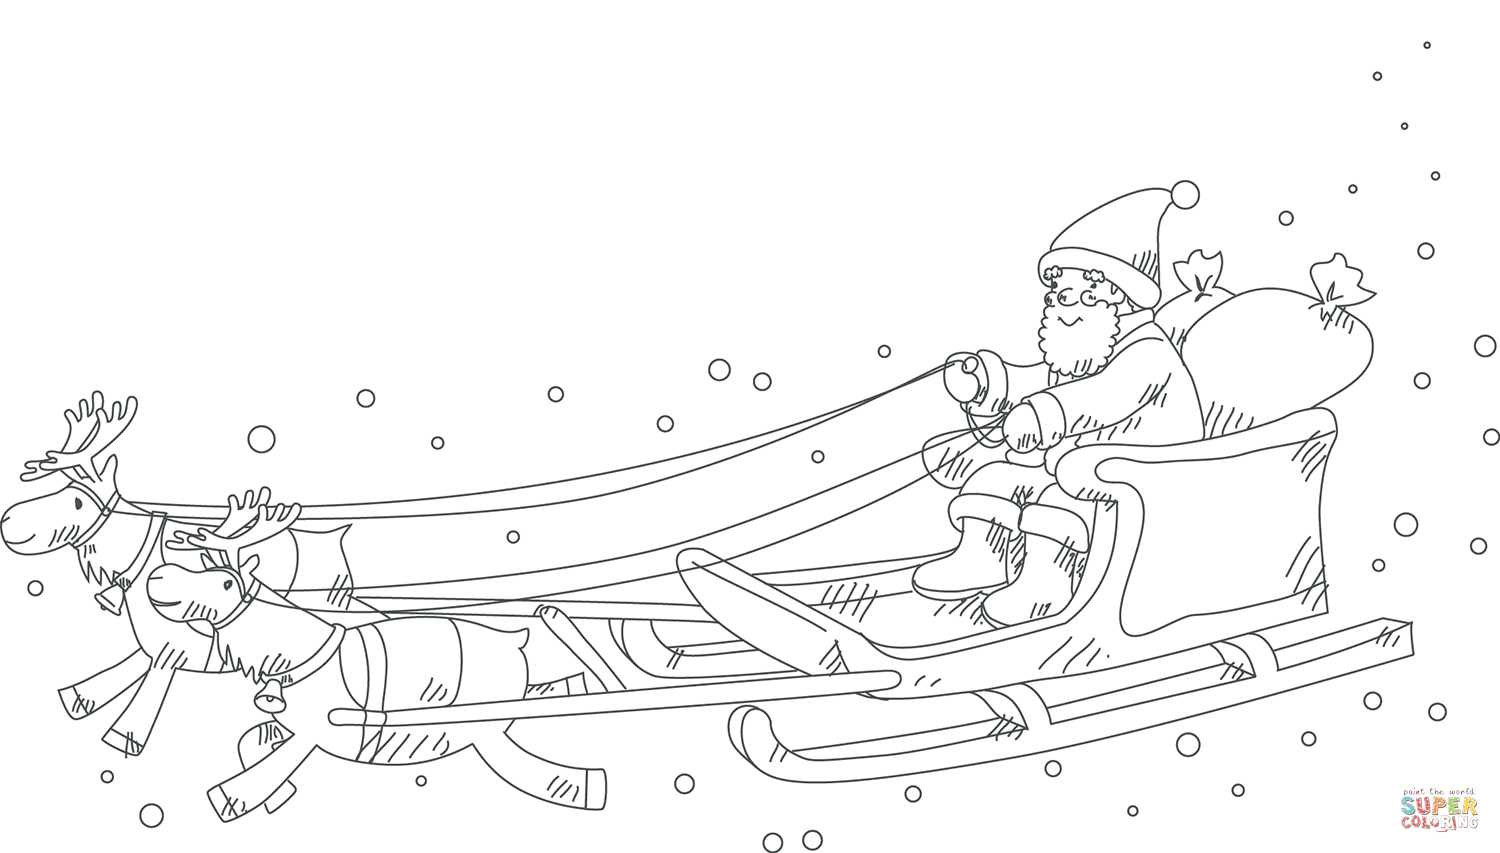 Santa Claus in sleigh pulled by reindeer